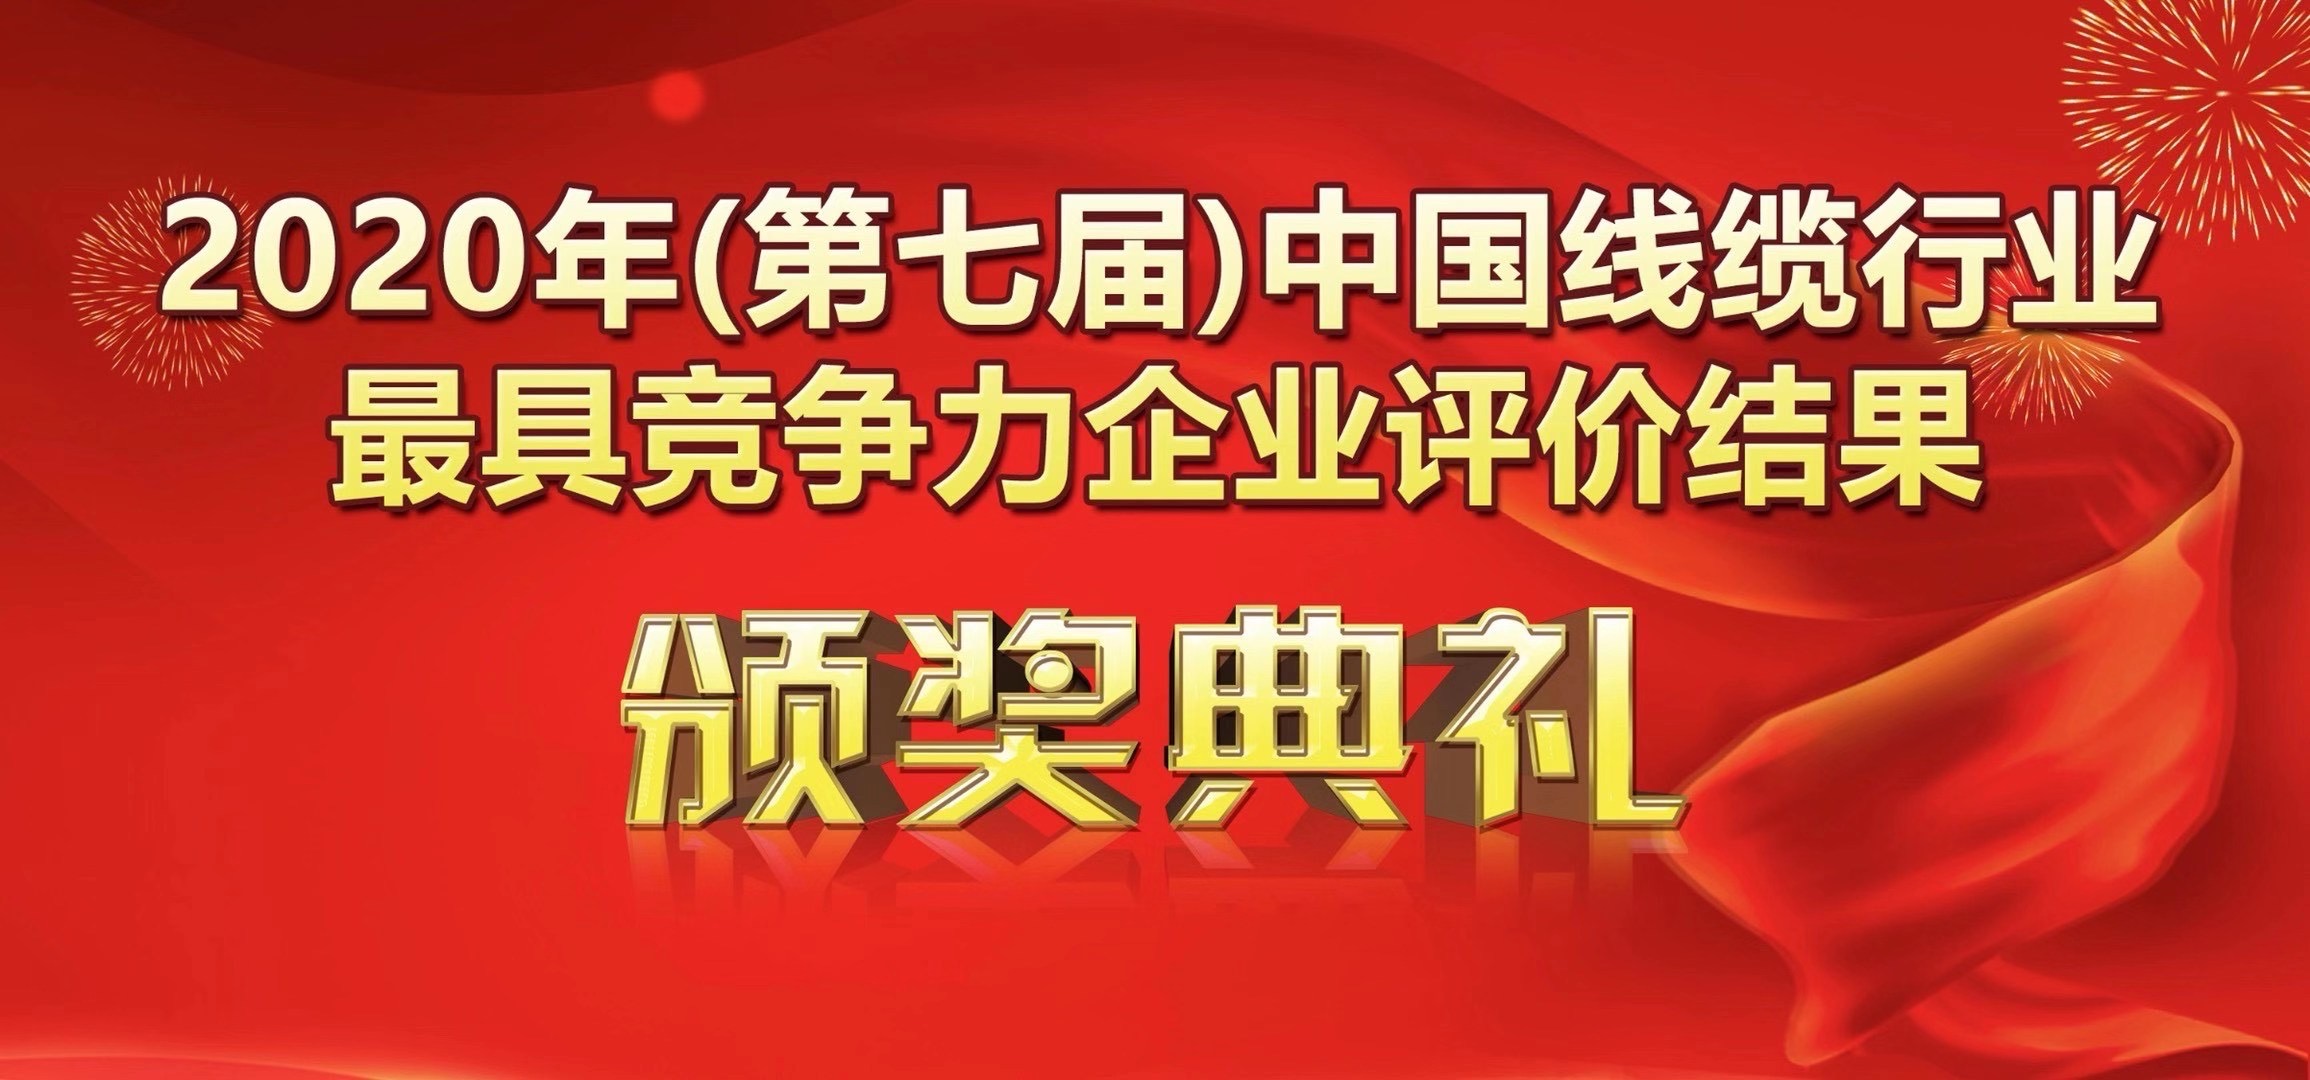 喜讯-广州南洋电缆有限公司荣获2020年度中国线缆行业20强